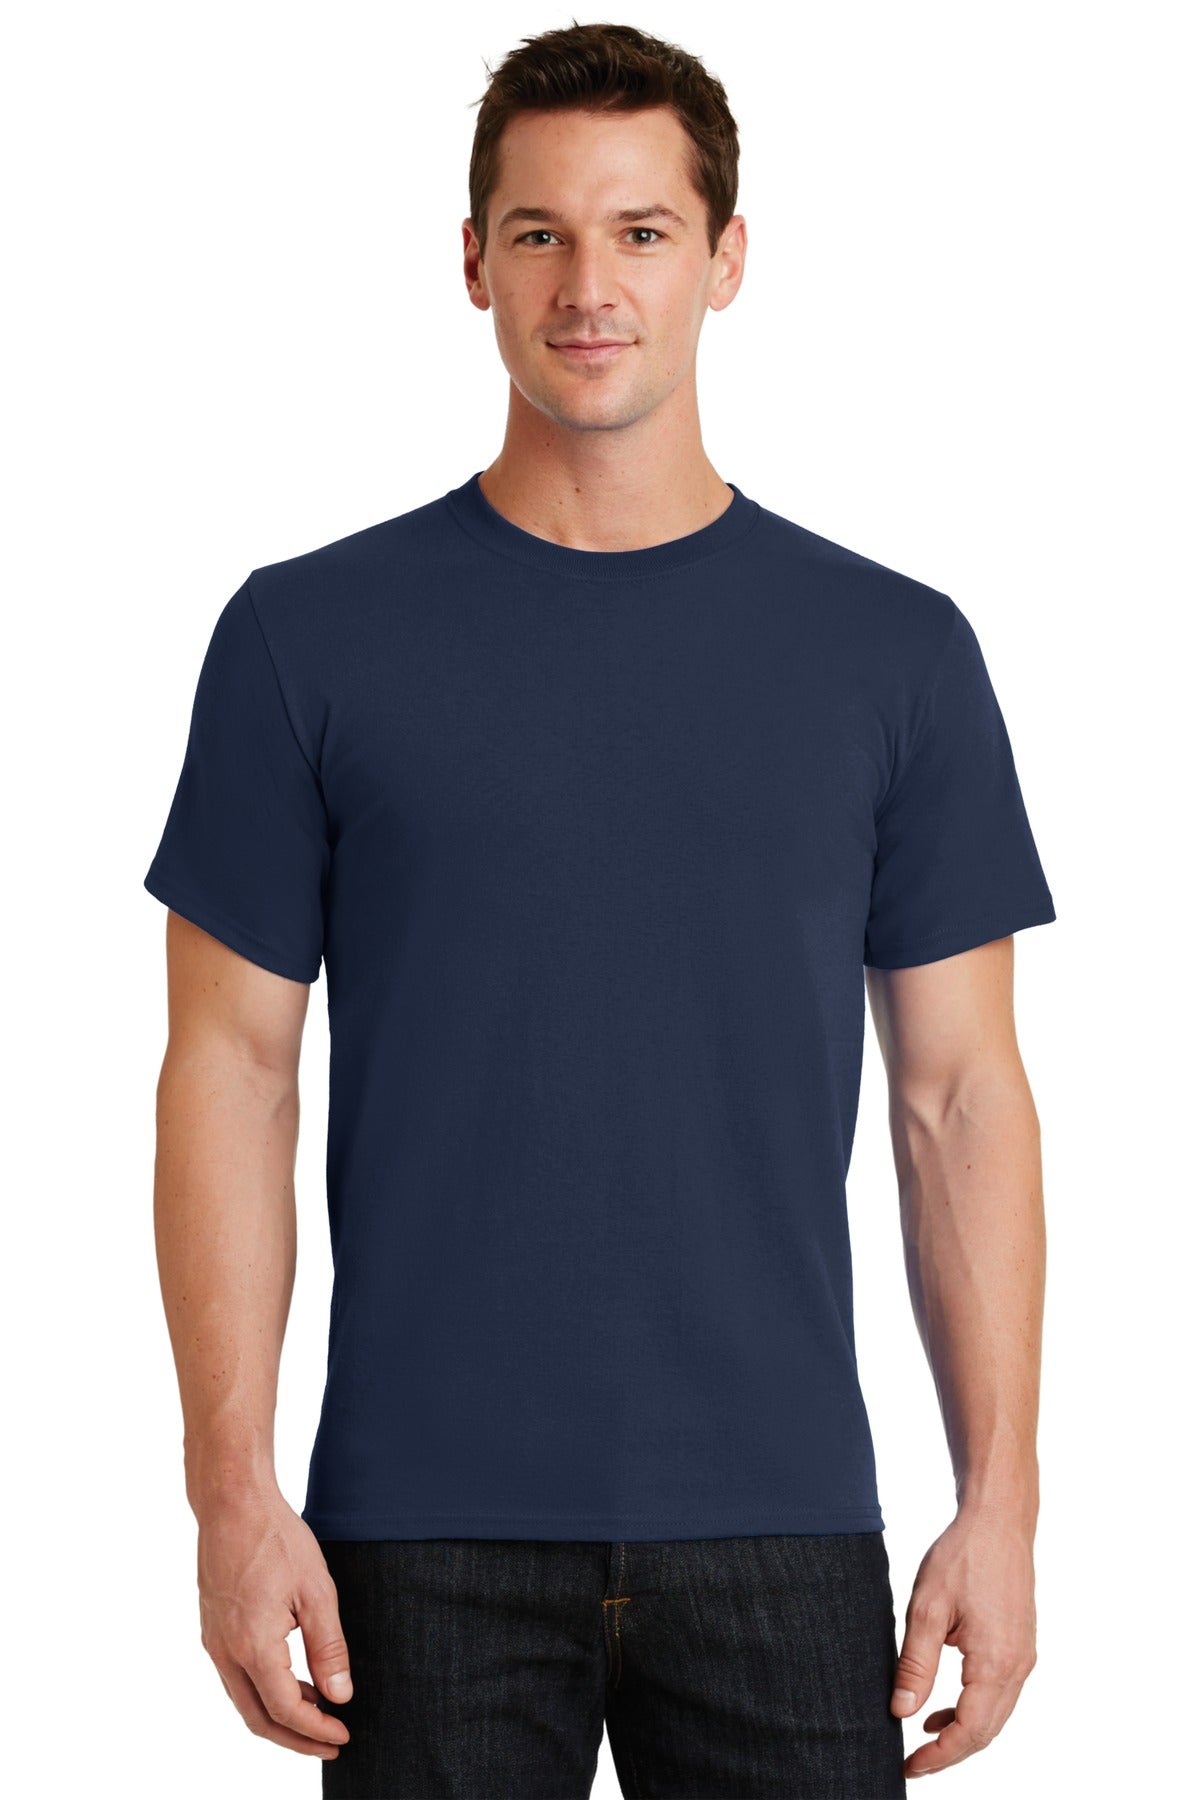 T-Shirts Navy Port & Company